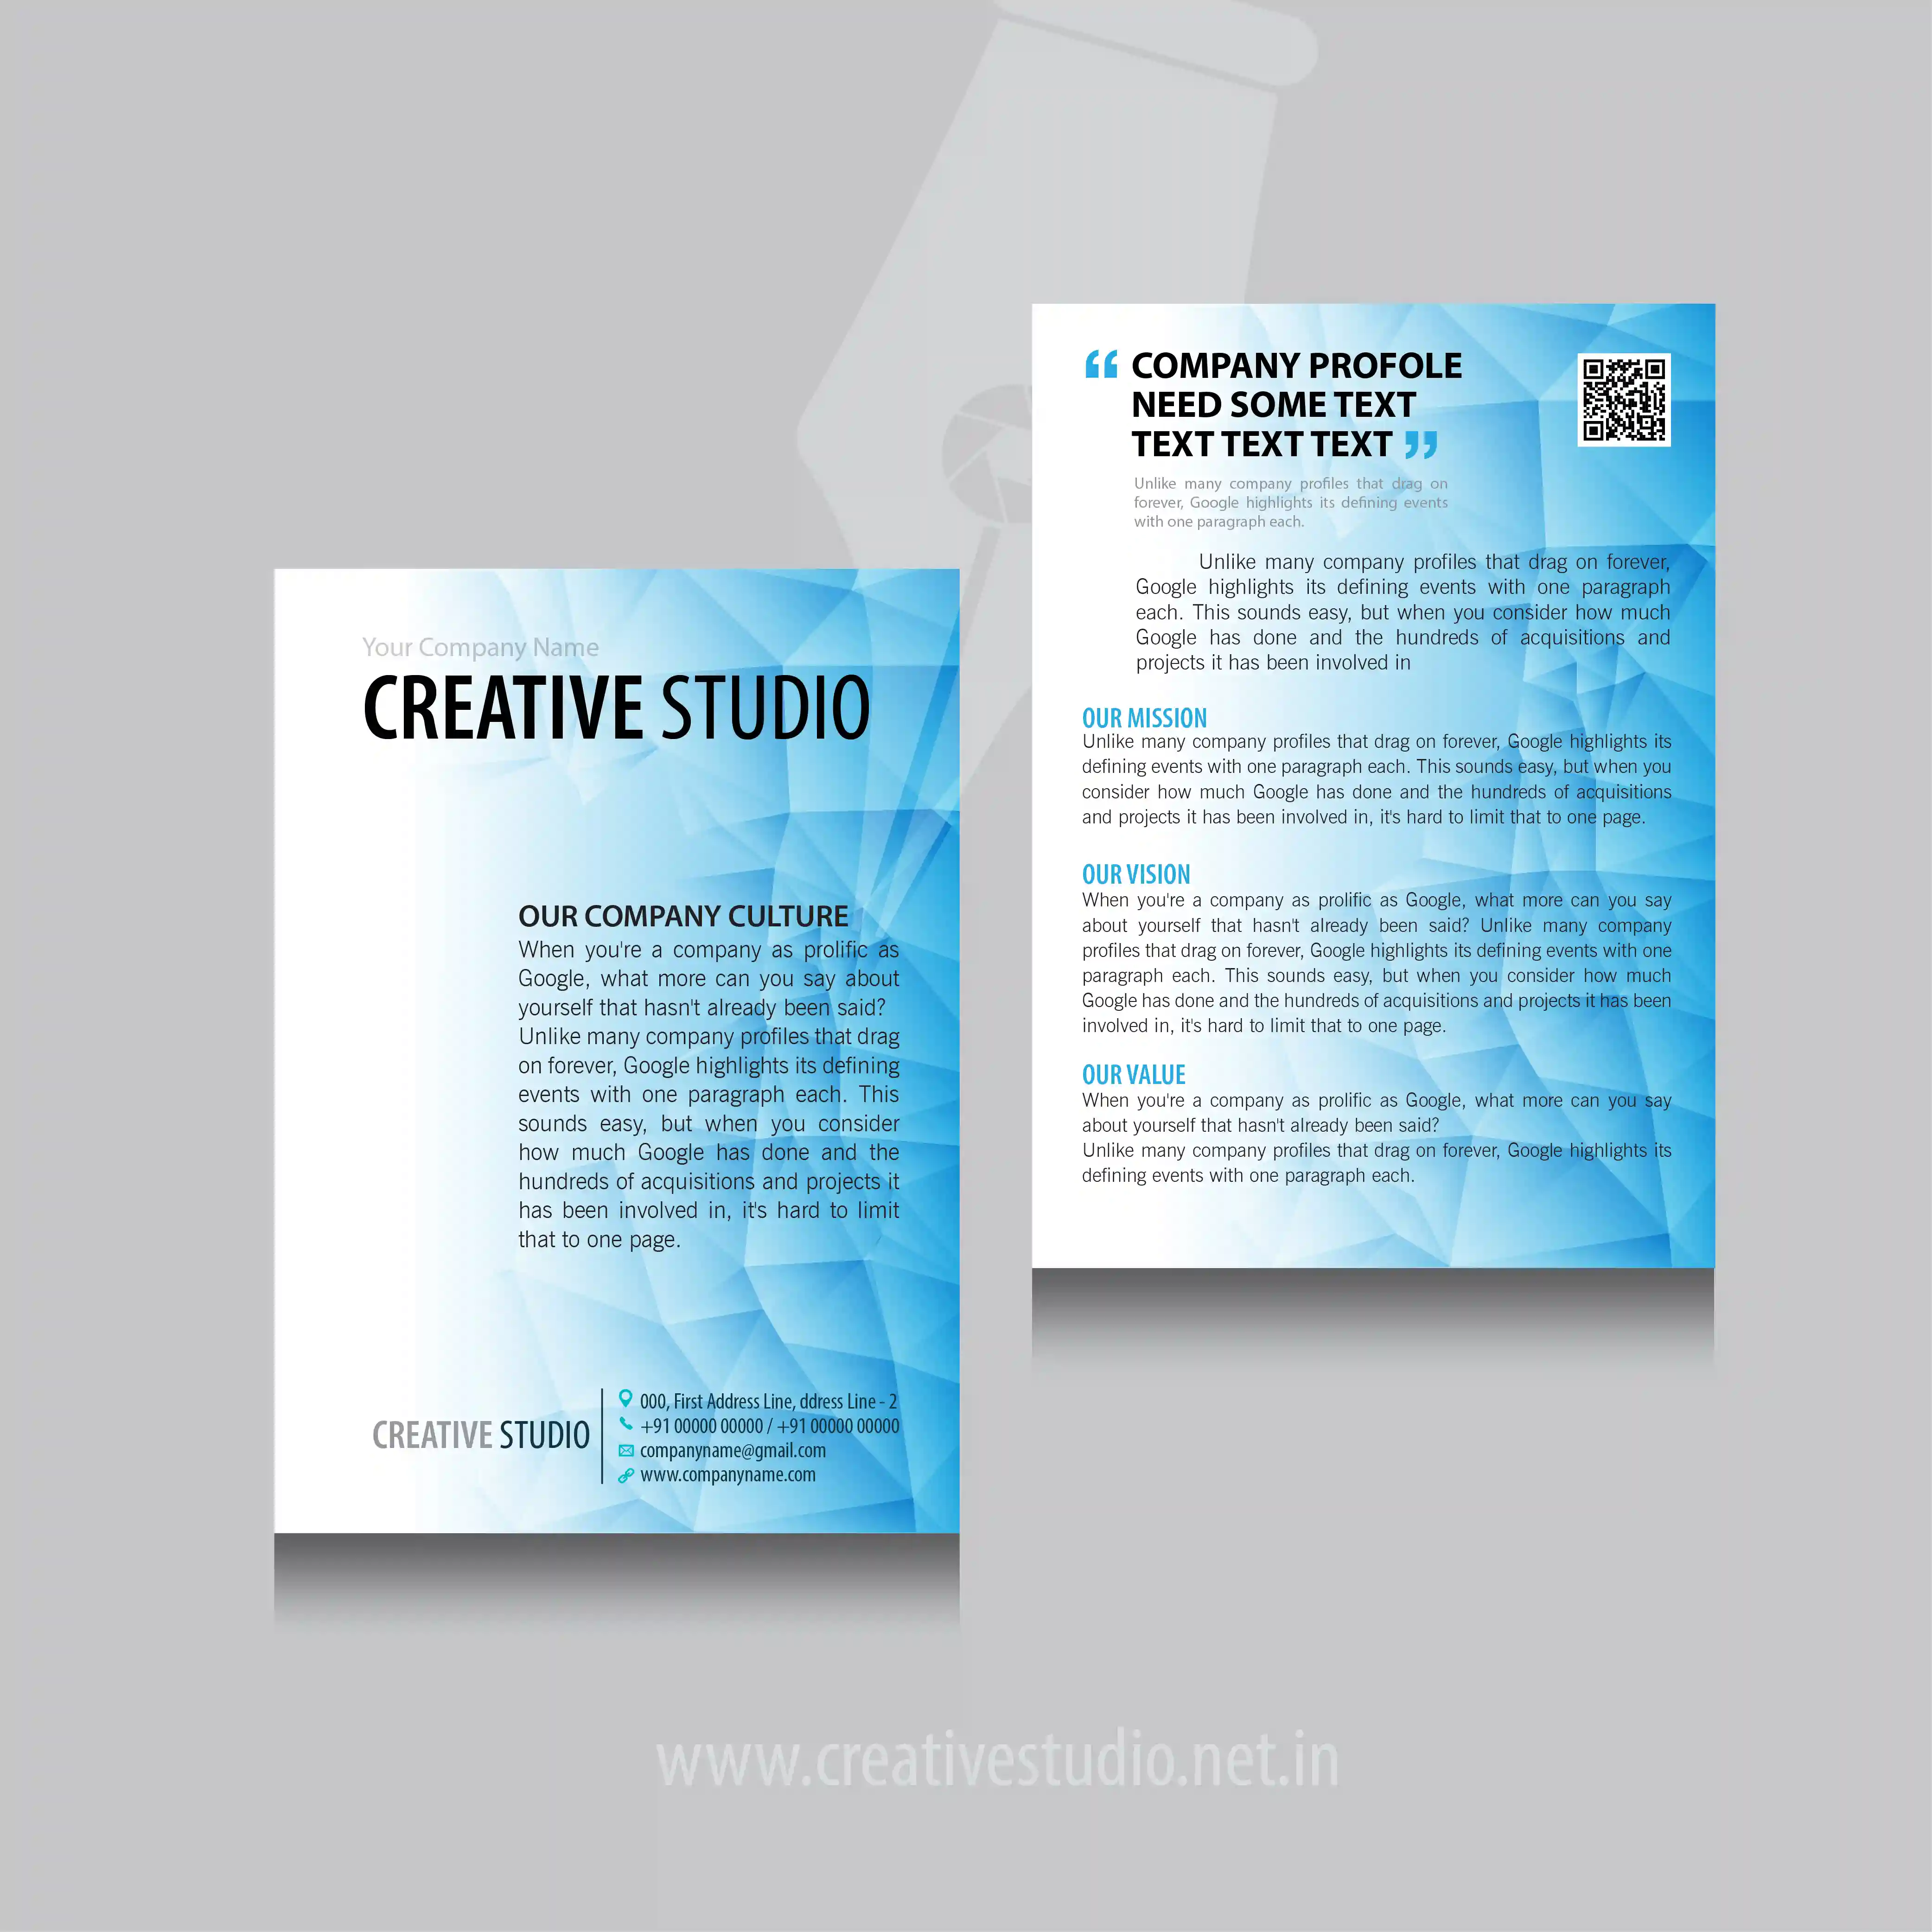 COMPANY PROFILE 04 01 - Company Profile Design Service by Creative Studio